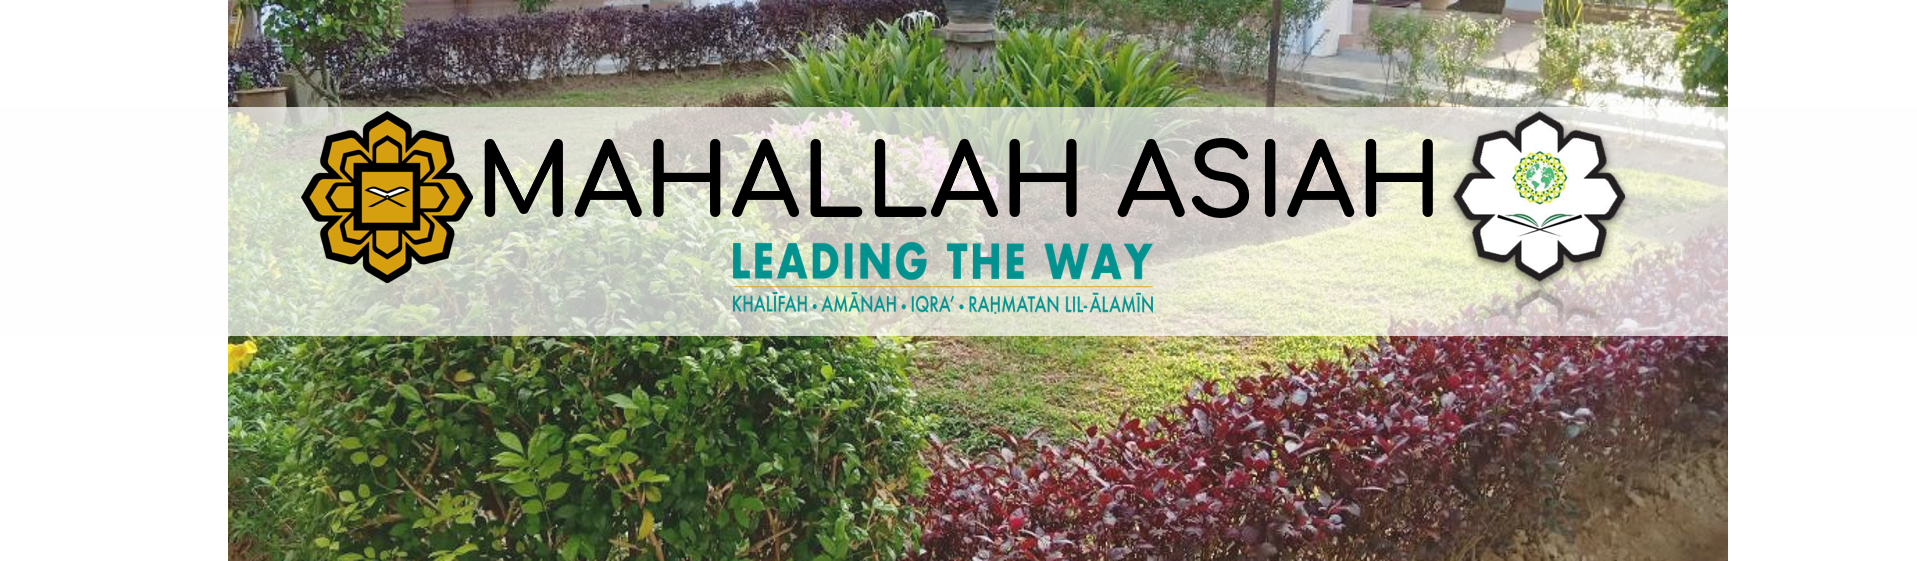 MAHALLAH ASIAH (RESIDENTIAL COLLEGE)